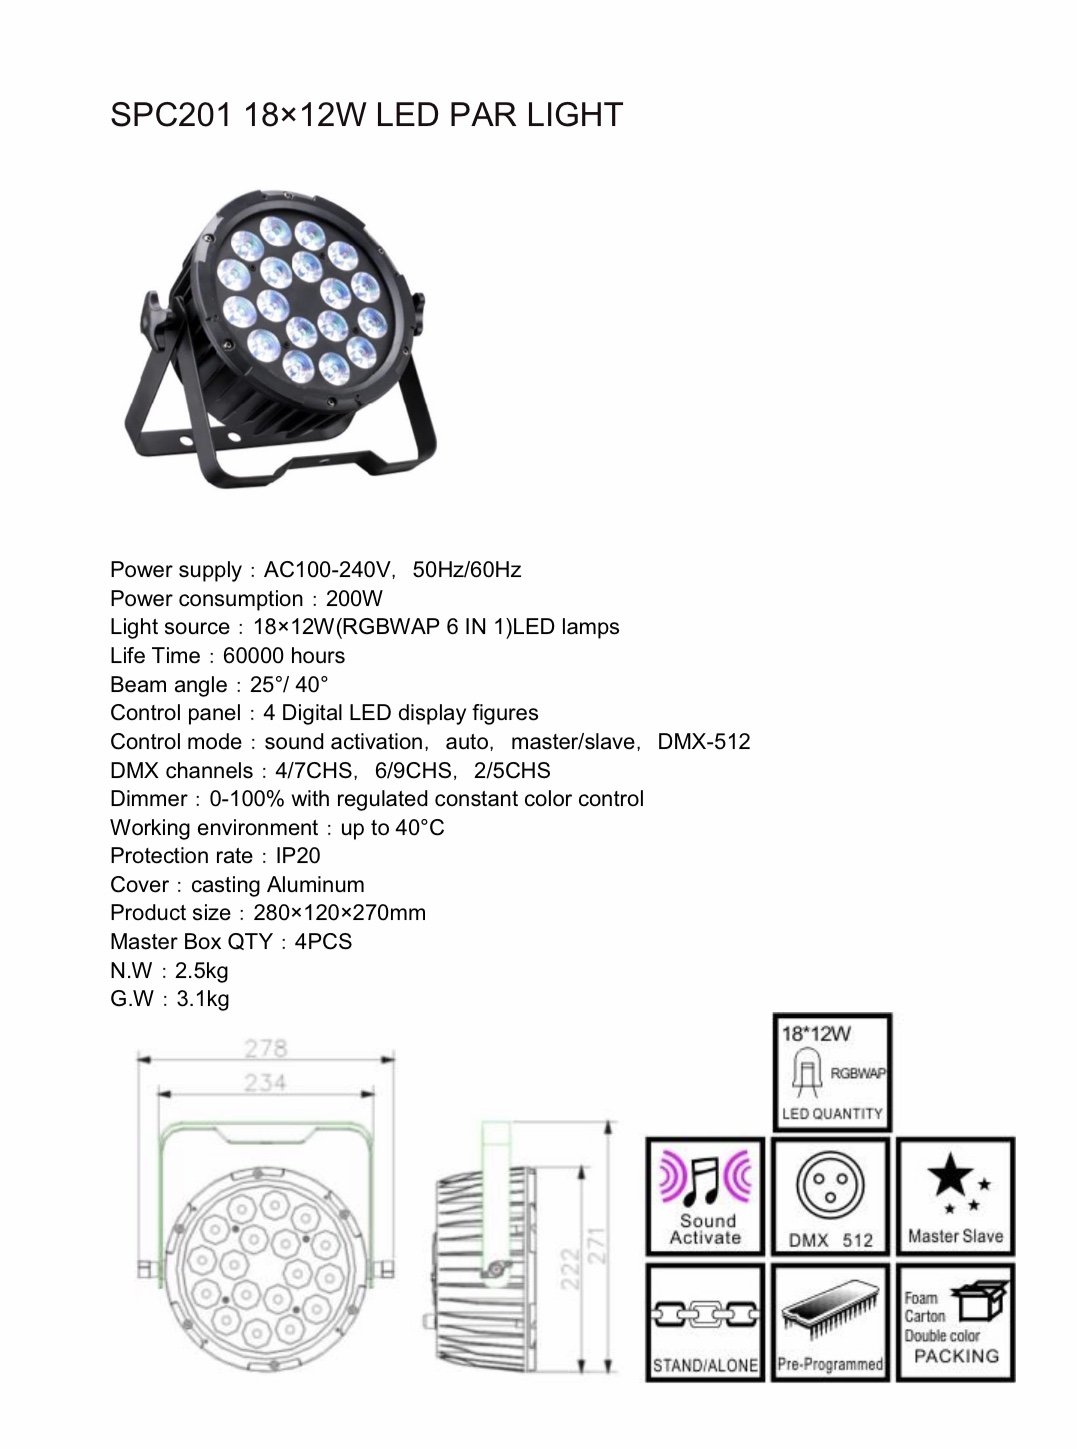 PAR LED SPC201 18x12w